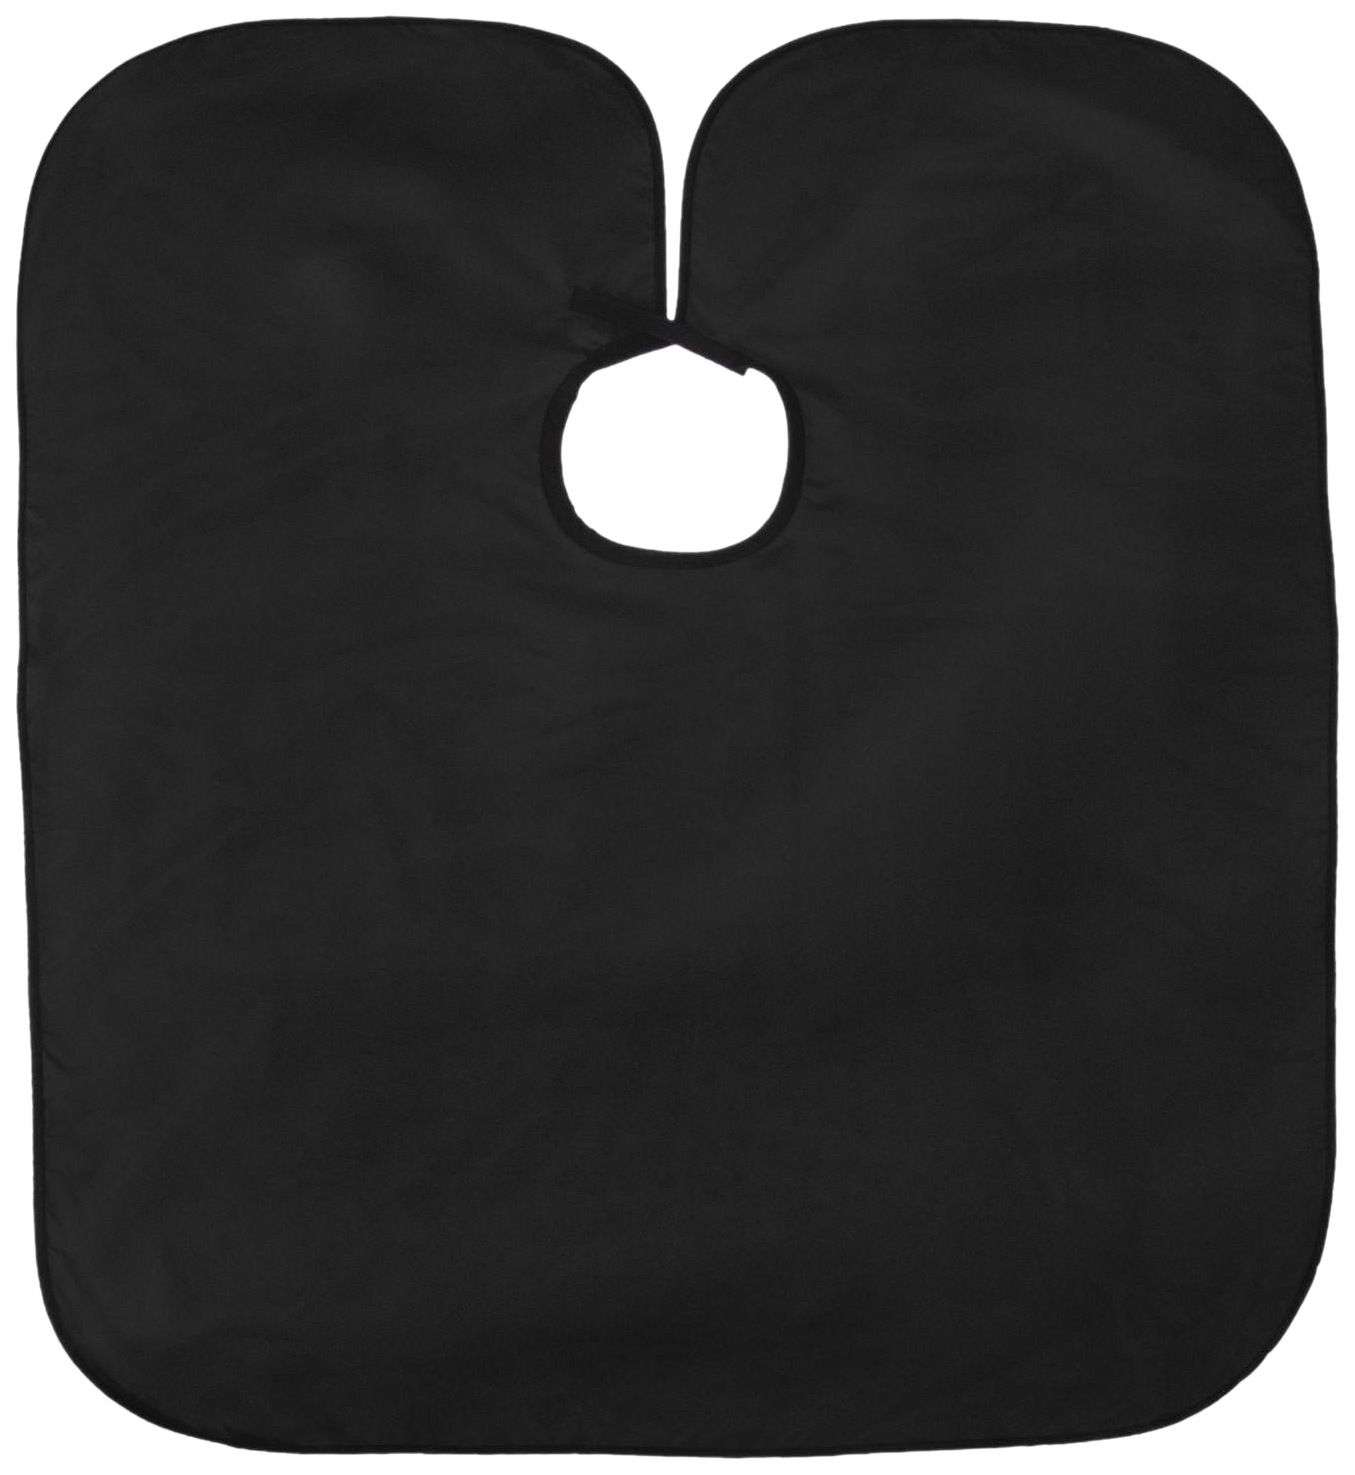 Пелерина парикмахерская, на липучке, цвет чёрный 7122011 шлем кроссовый o’neal 2series spyde 2 0 размер s чёрный белый